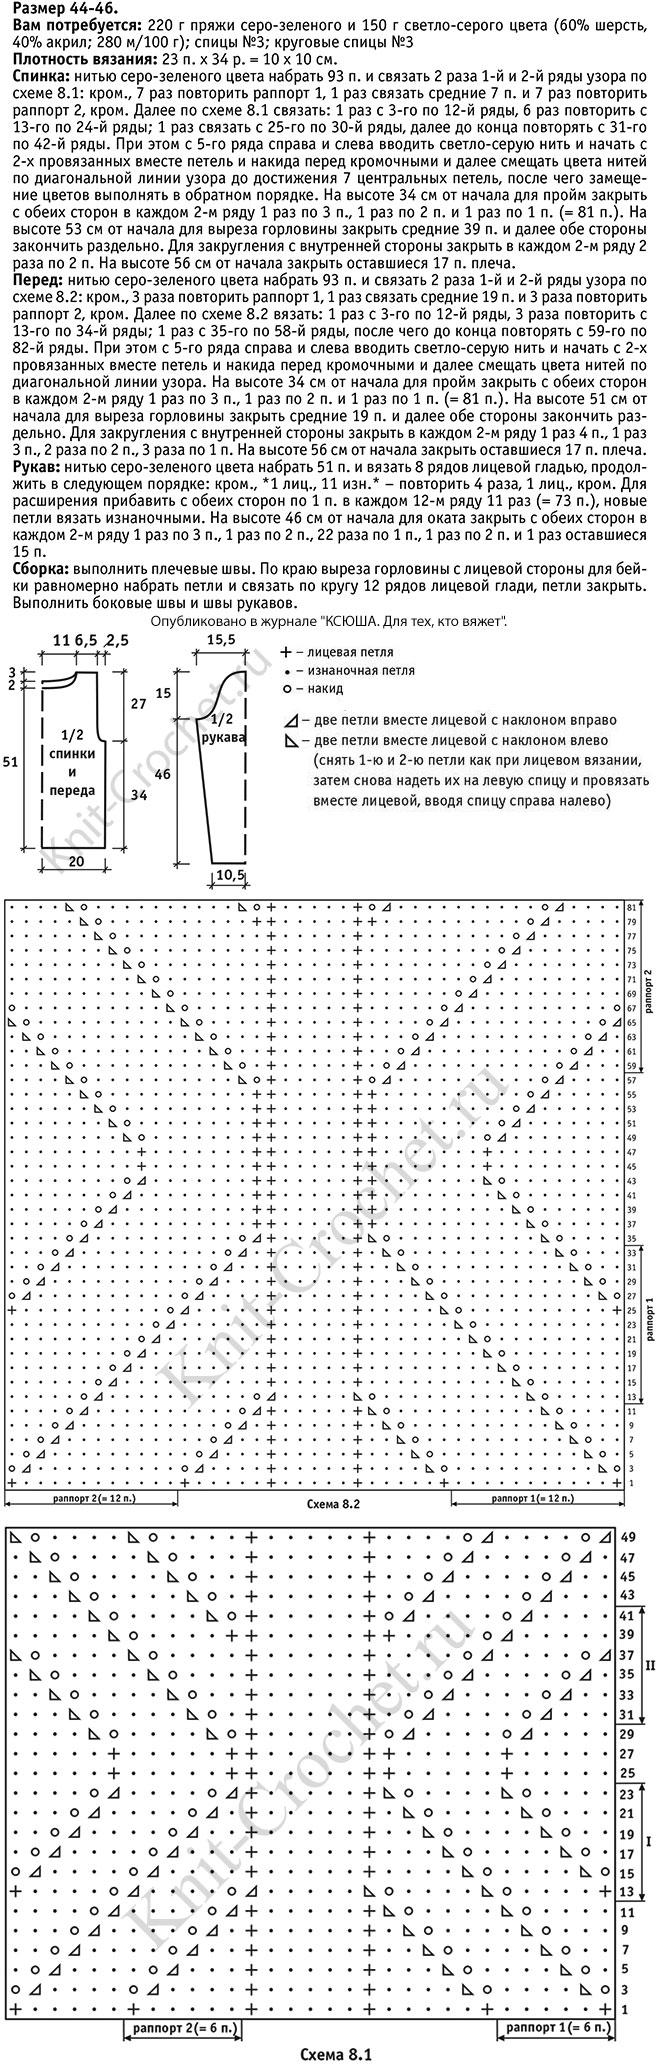 Выкройка, схемы узоров с описанием вязания спицами женского пуловера с диагональными линиями 44-46 размера.